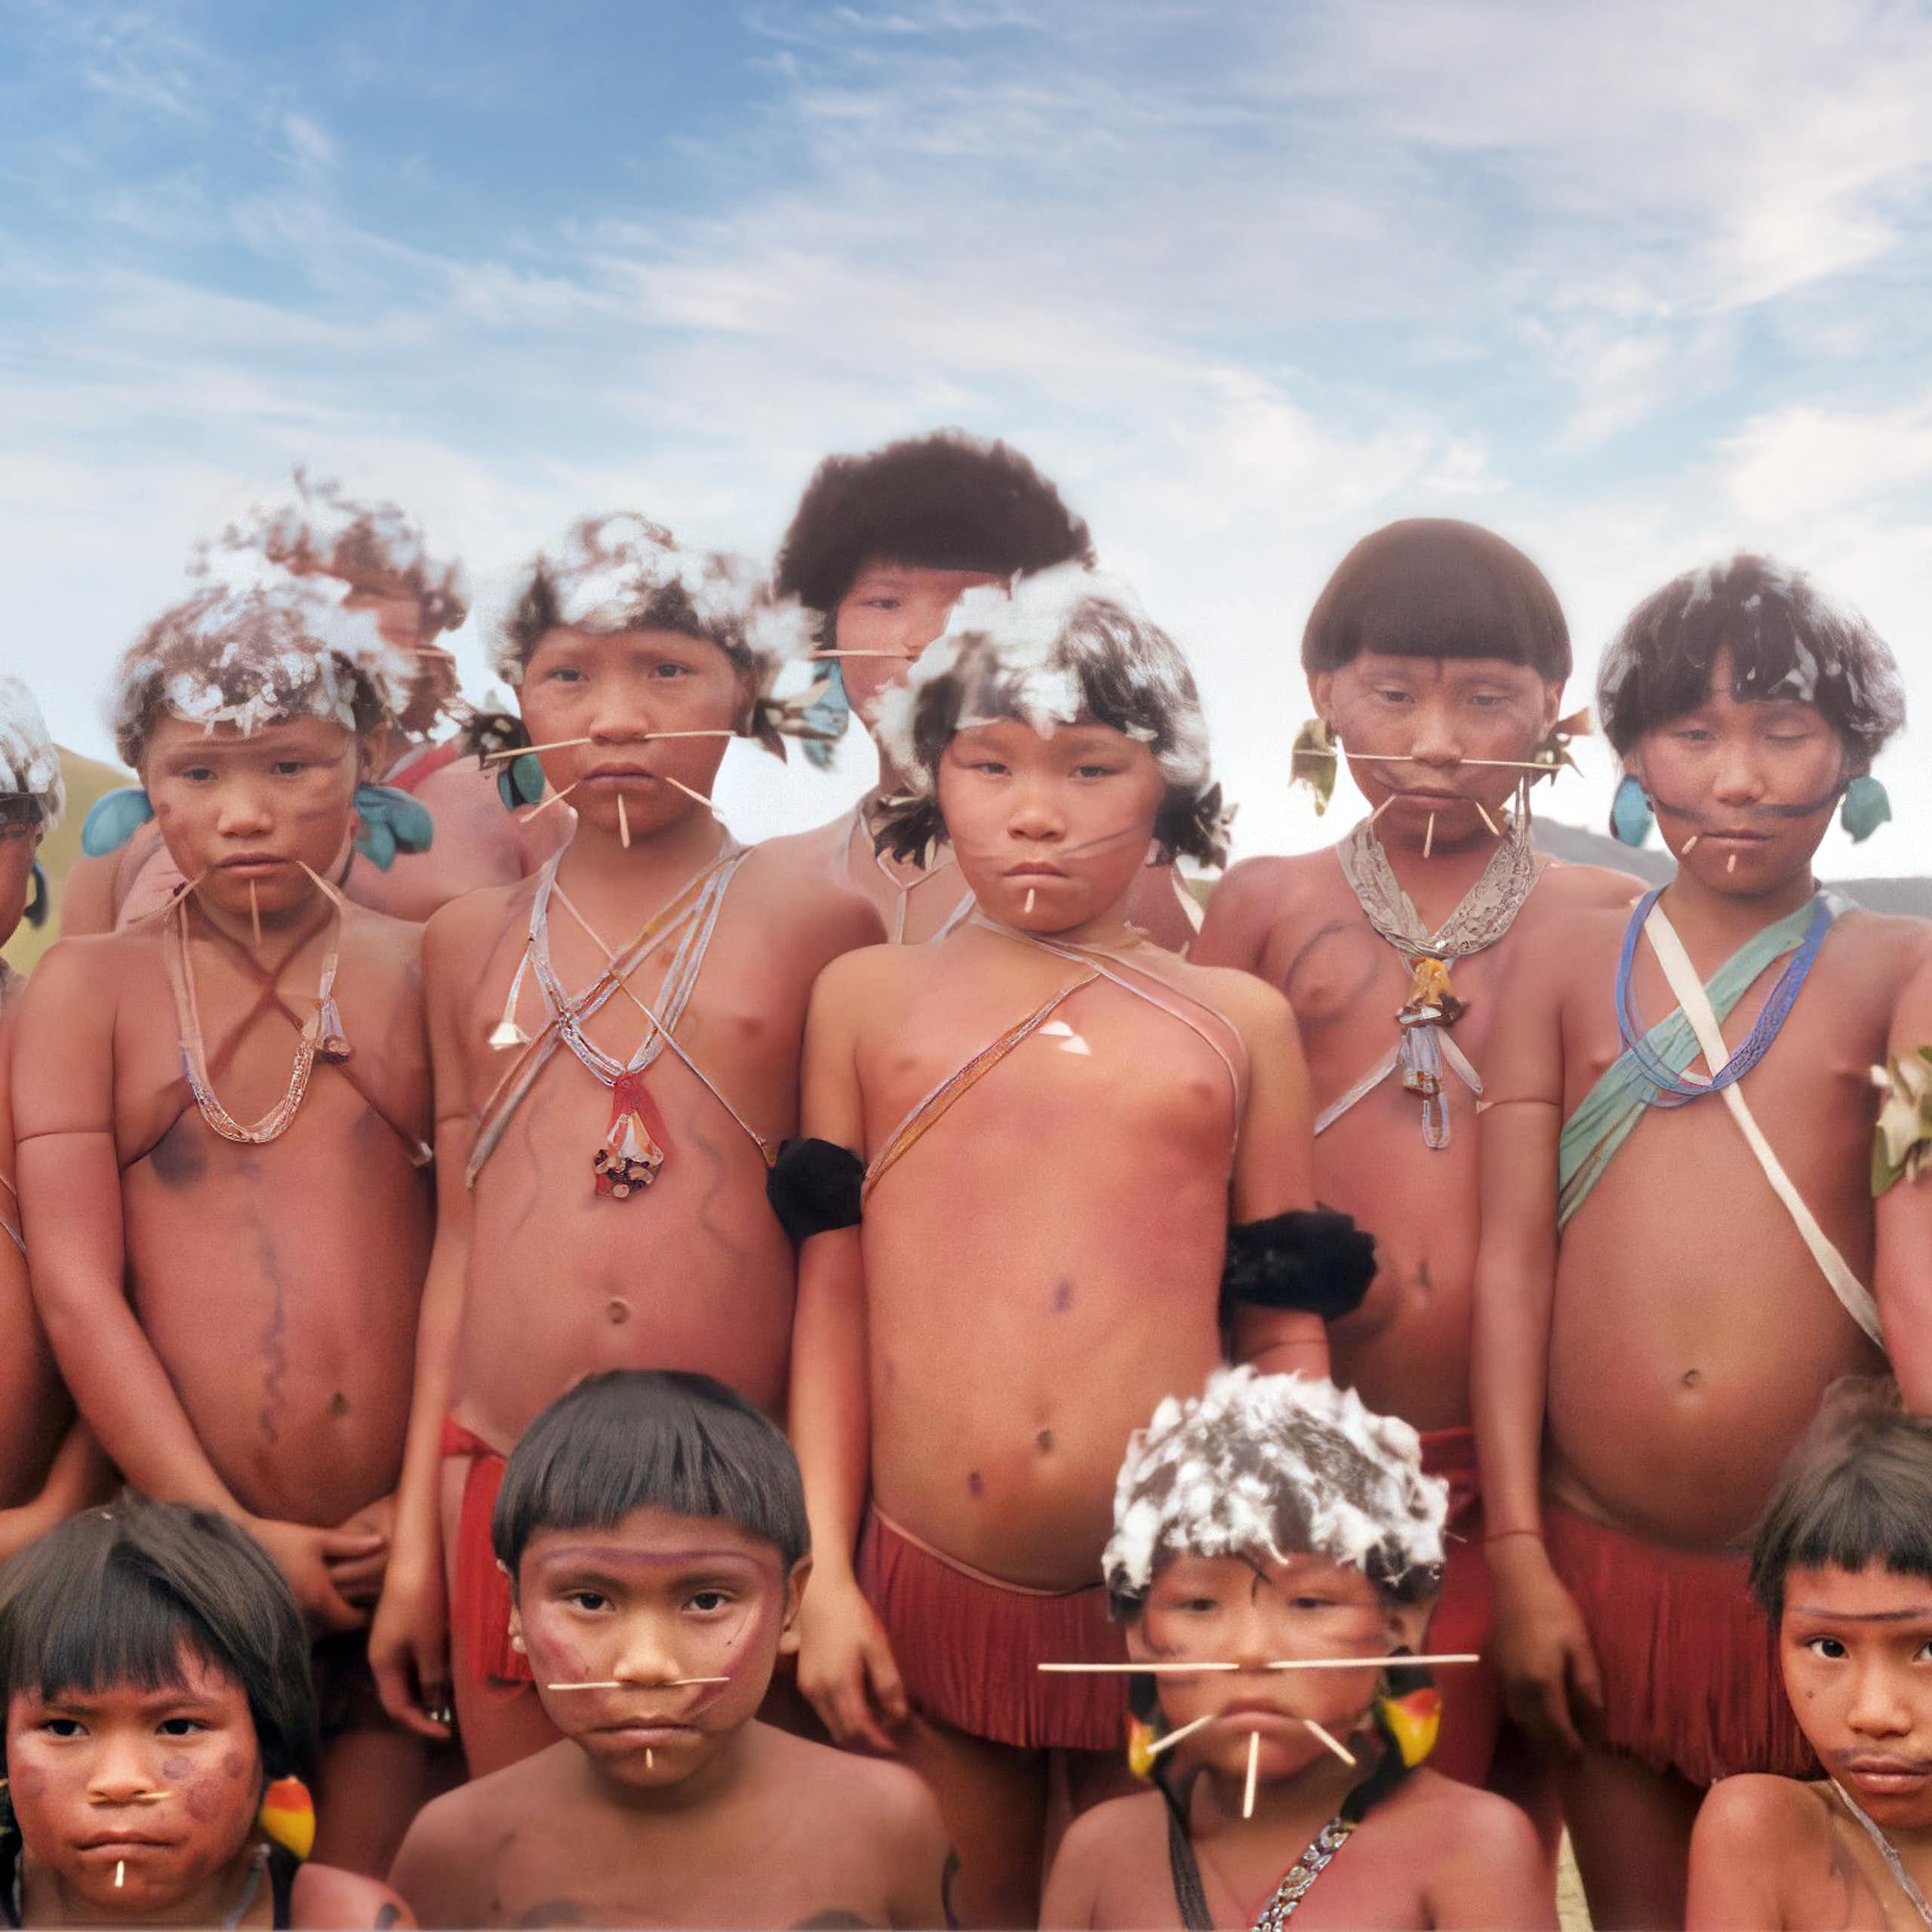 Los pueblos indígenas no son naturaleza silvestre: cuando las áreas protegidas ignoran sus derechos